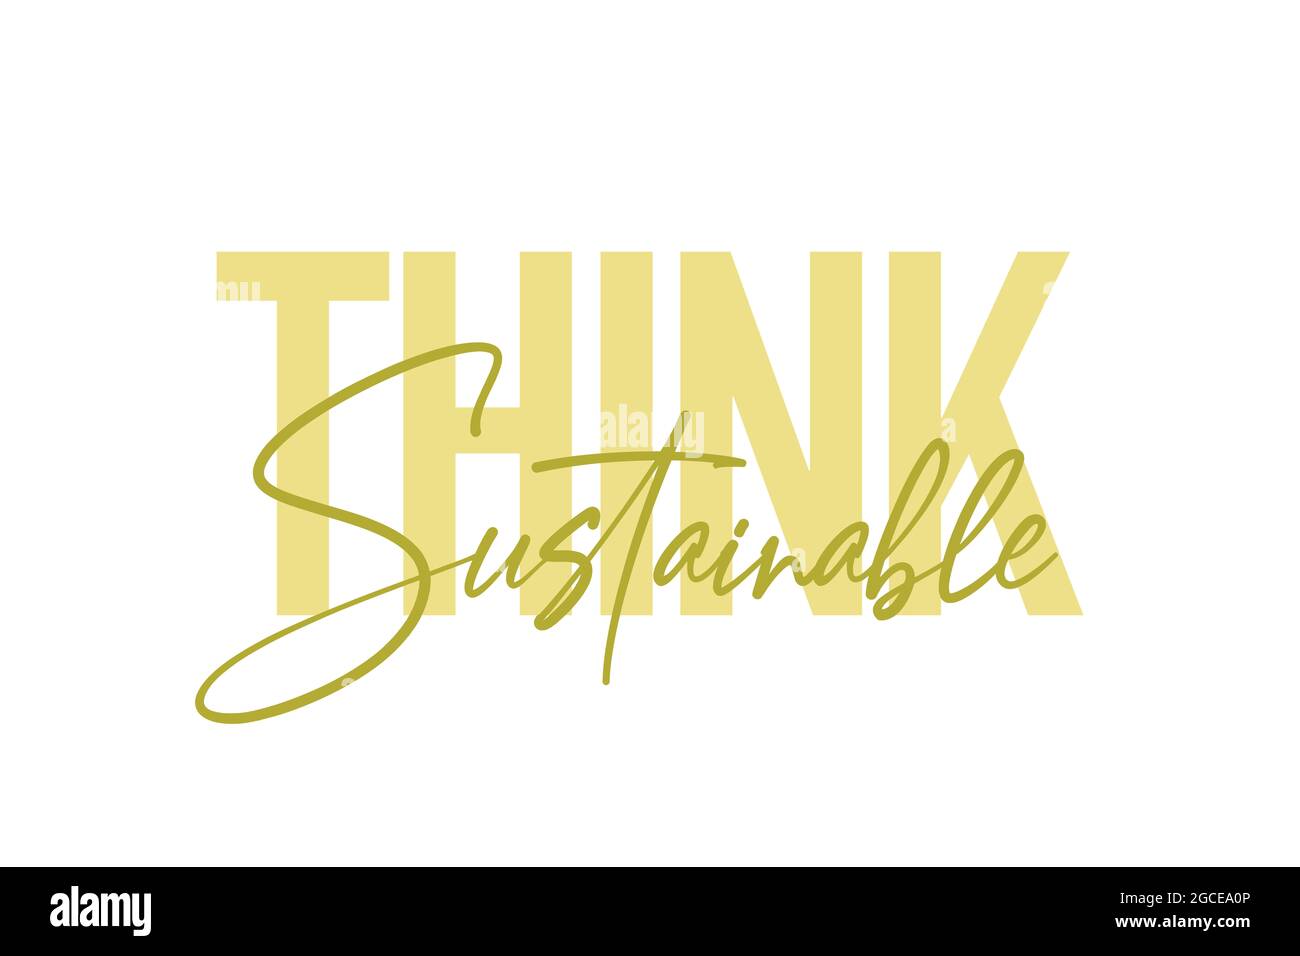 Modernes, schlichtes, auffälliges typografisches Design mit der Aufschrift „Think Sustainable“ in grüner Farbe. Urbane, coole, trendige Grafik-Vektorgrafik mit handgeschriebener Handschrift Stockfoto